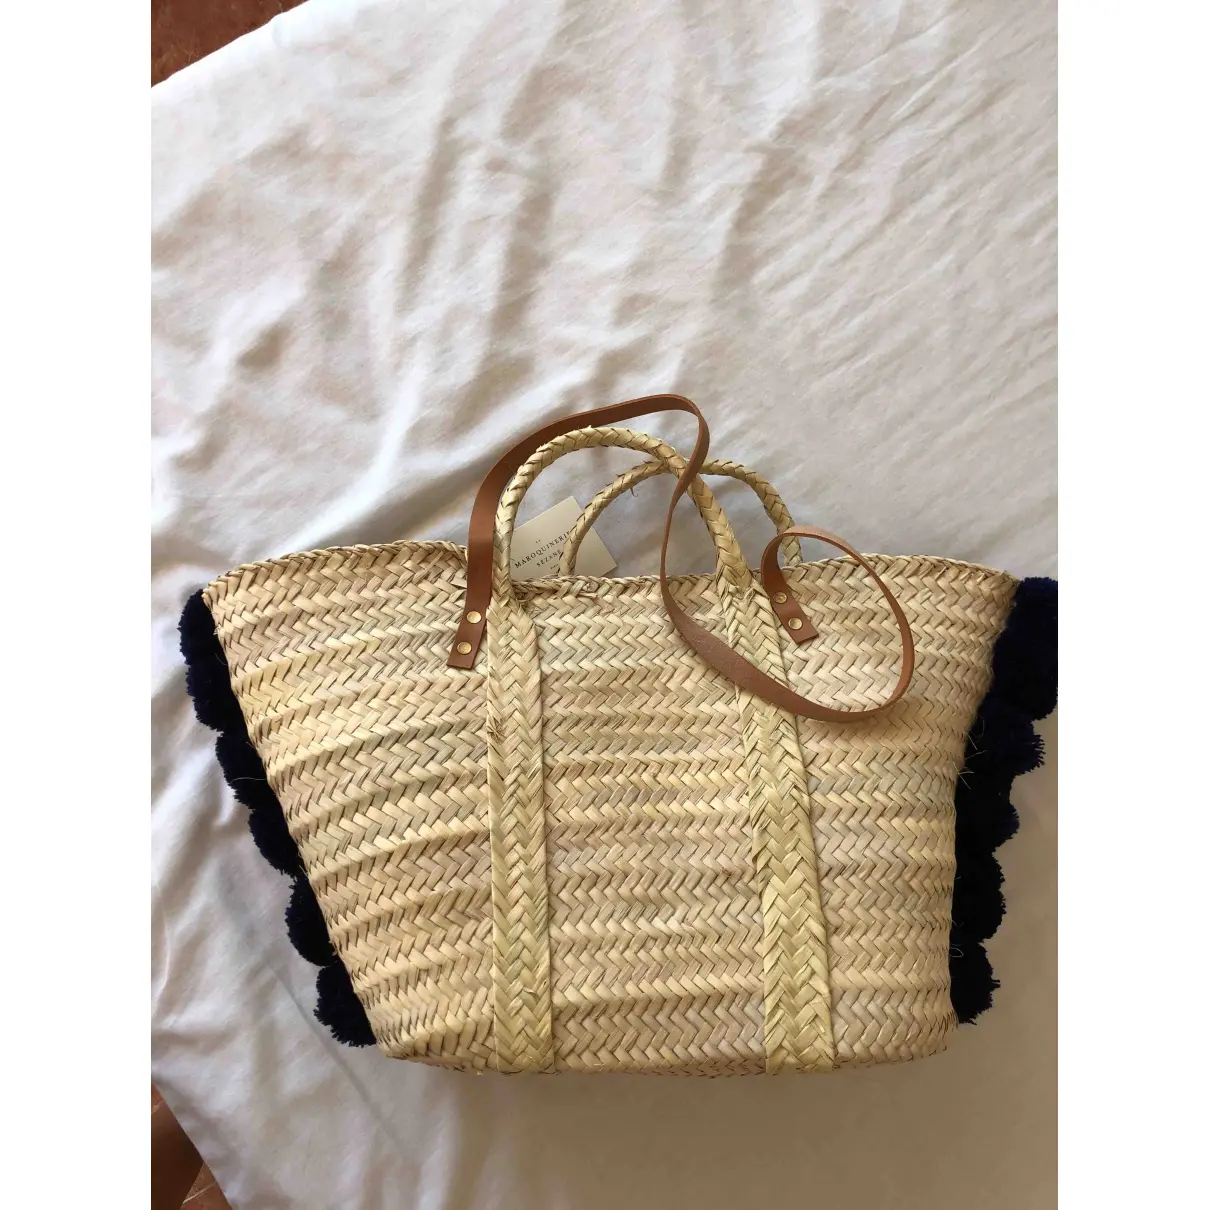 Buy Sézane Spring Summer 2020 handbag online